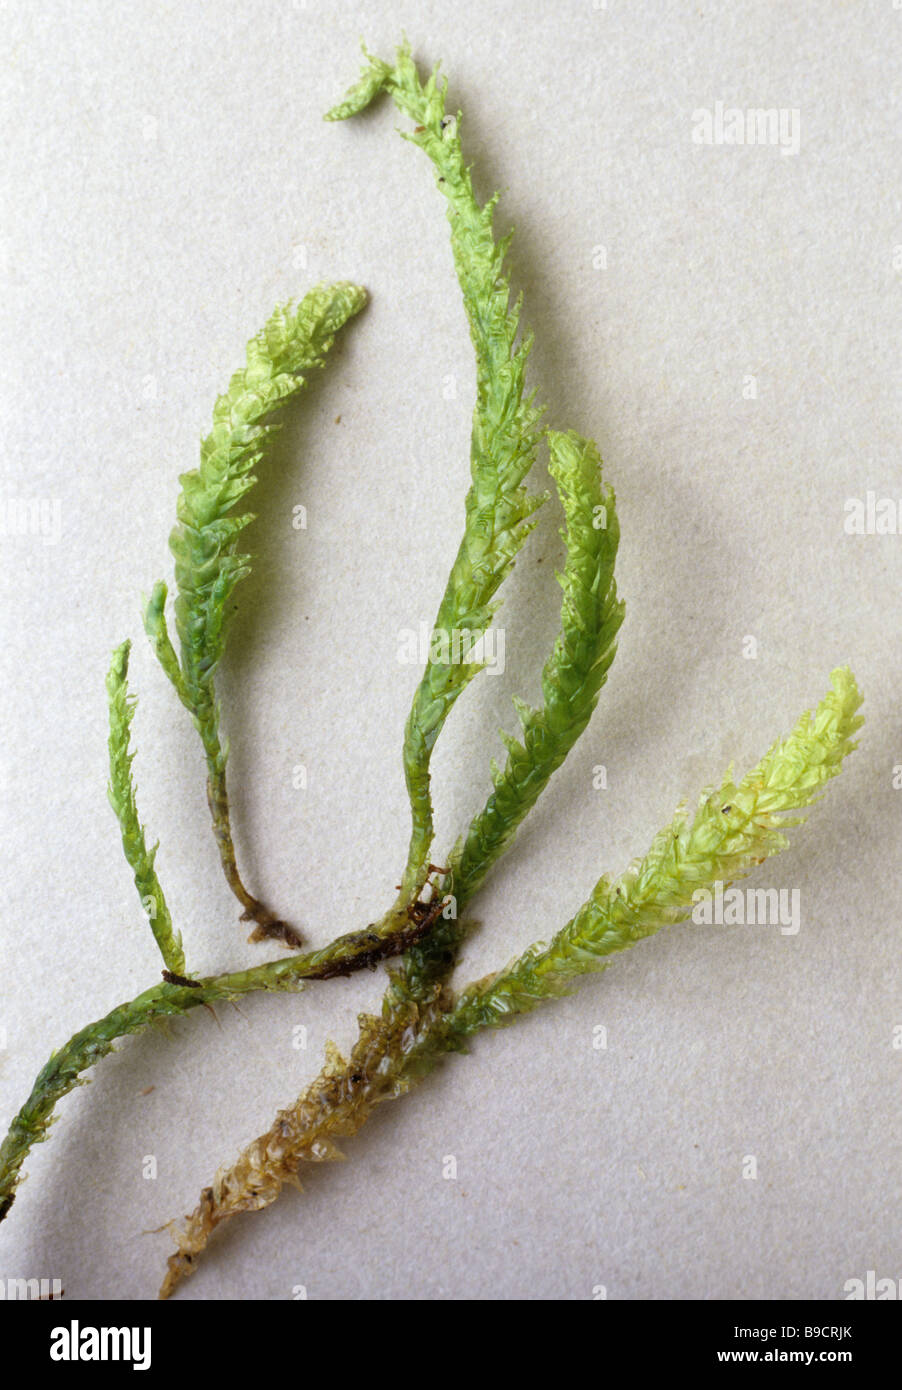 Moss Plagiothecium nemorale Stock Photo